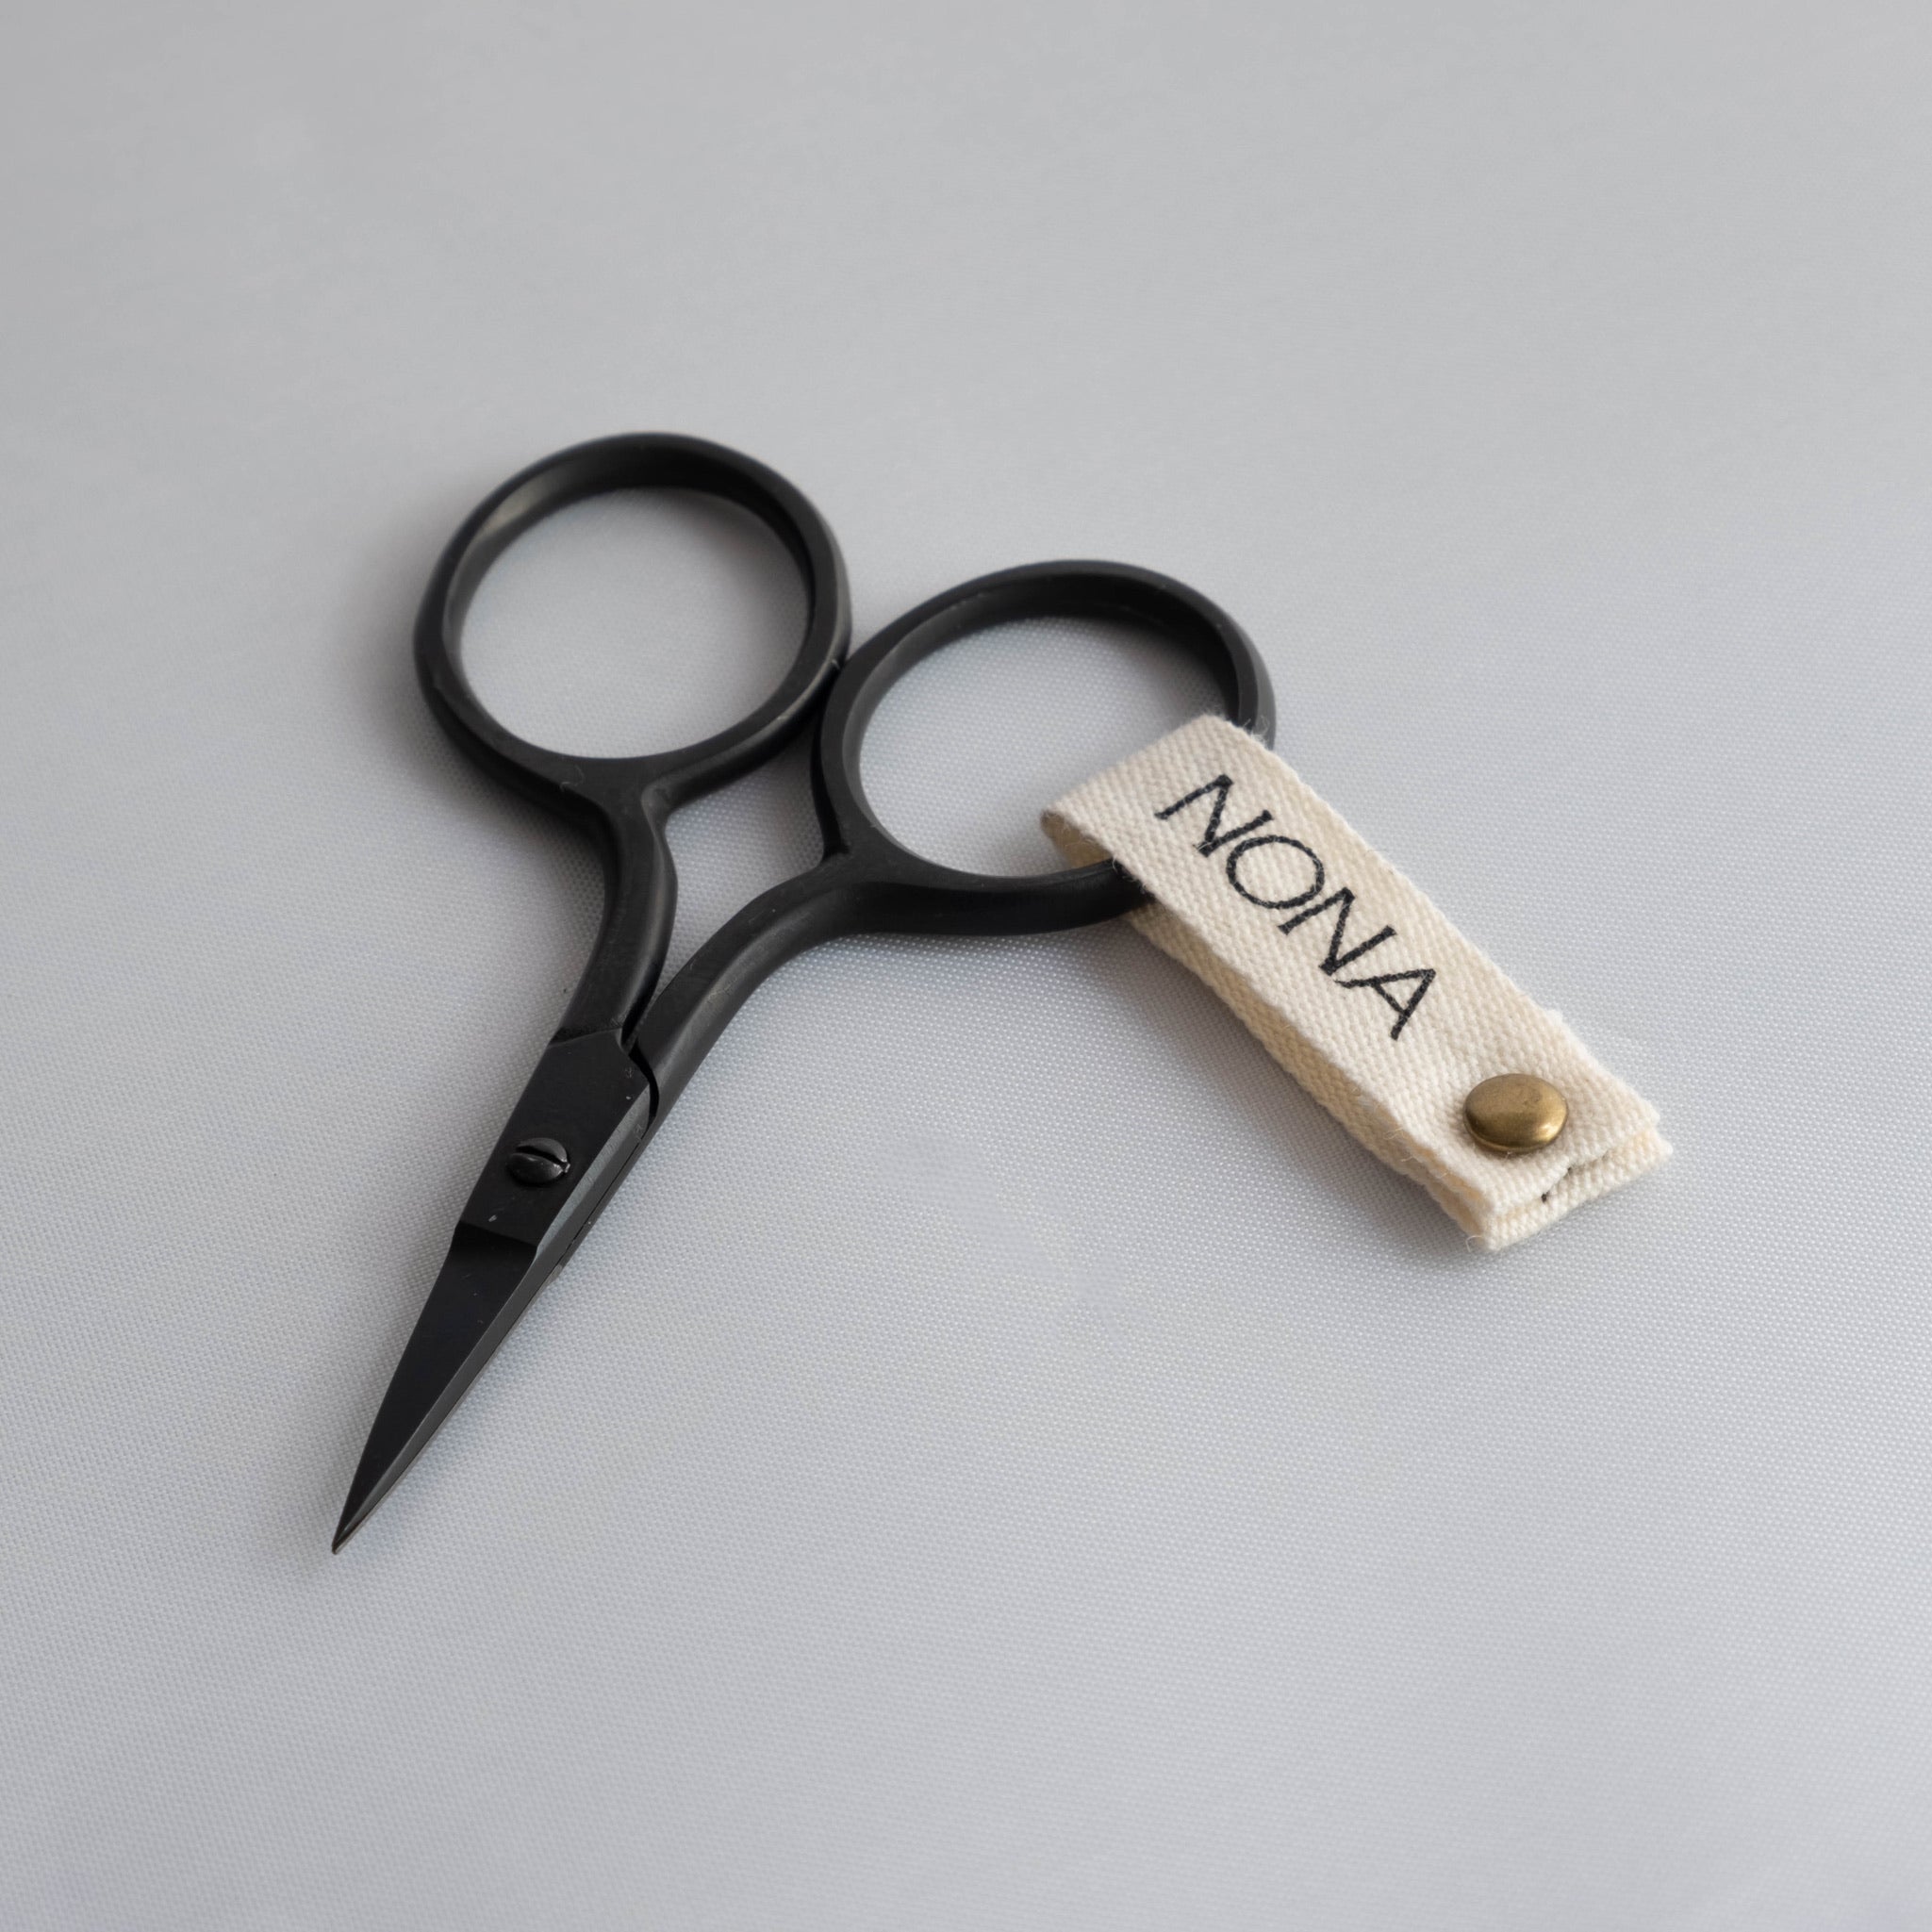 NONA Black Embroidery Mini Scissors